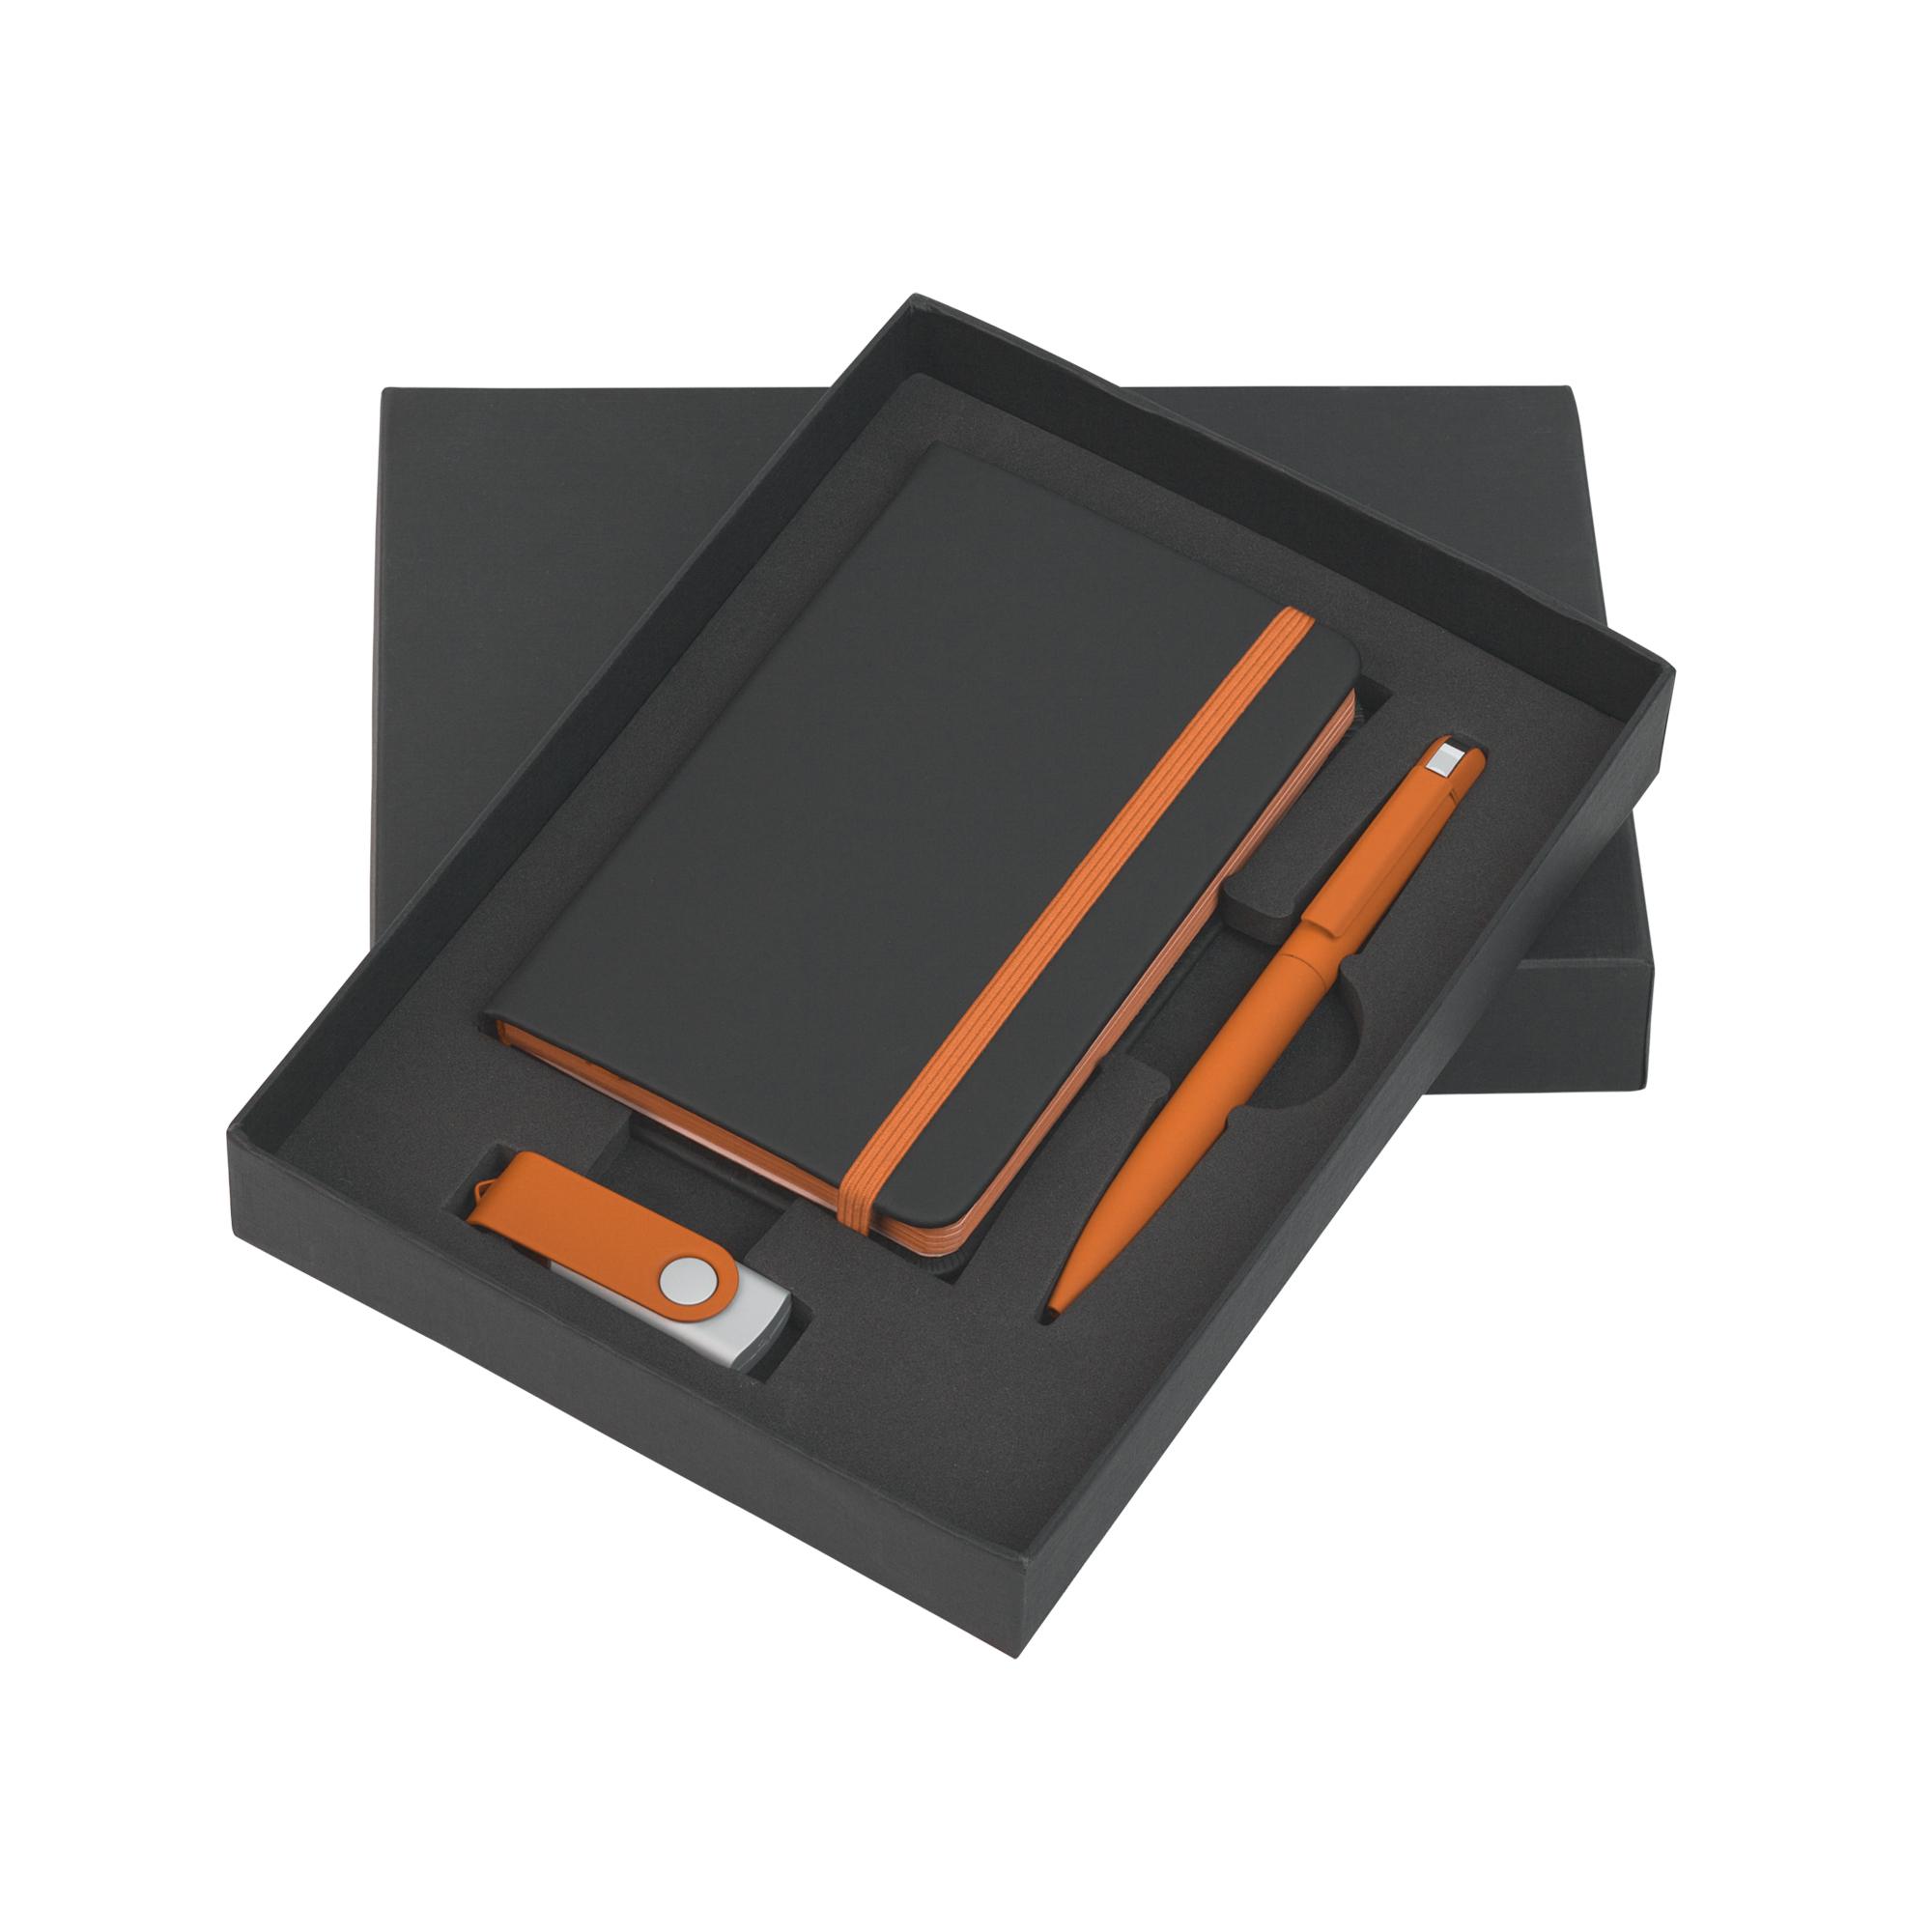 Подарочный набор "Пьемонт", покрытие soft touch, цвет черный с оранжевым, фото 2